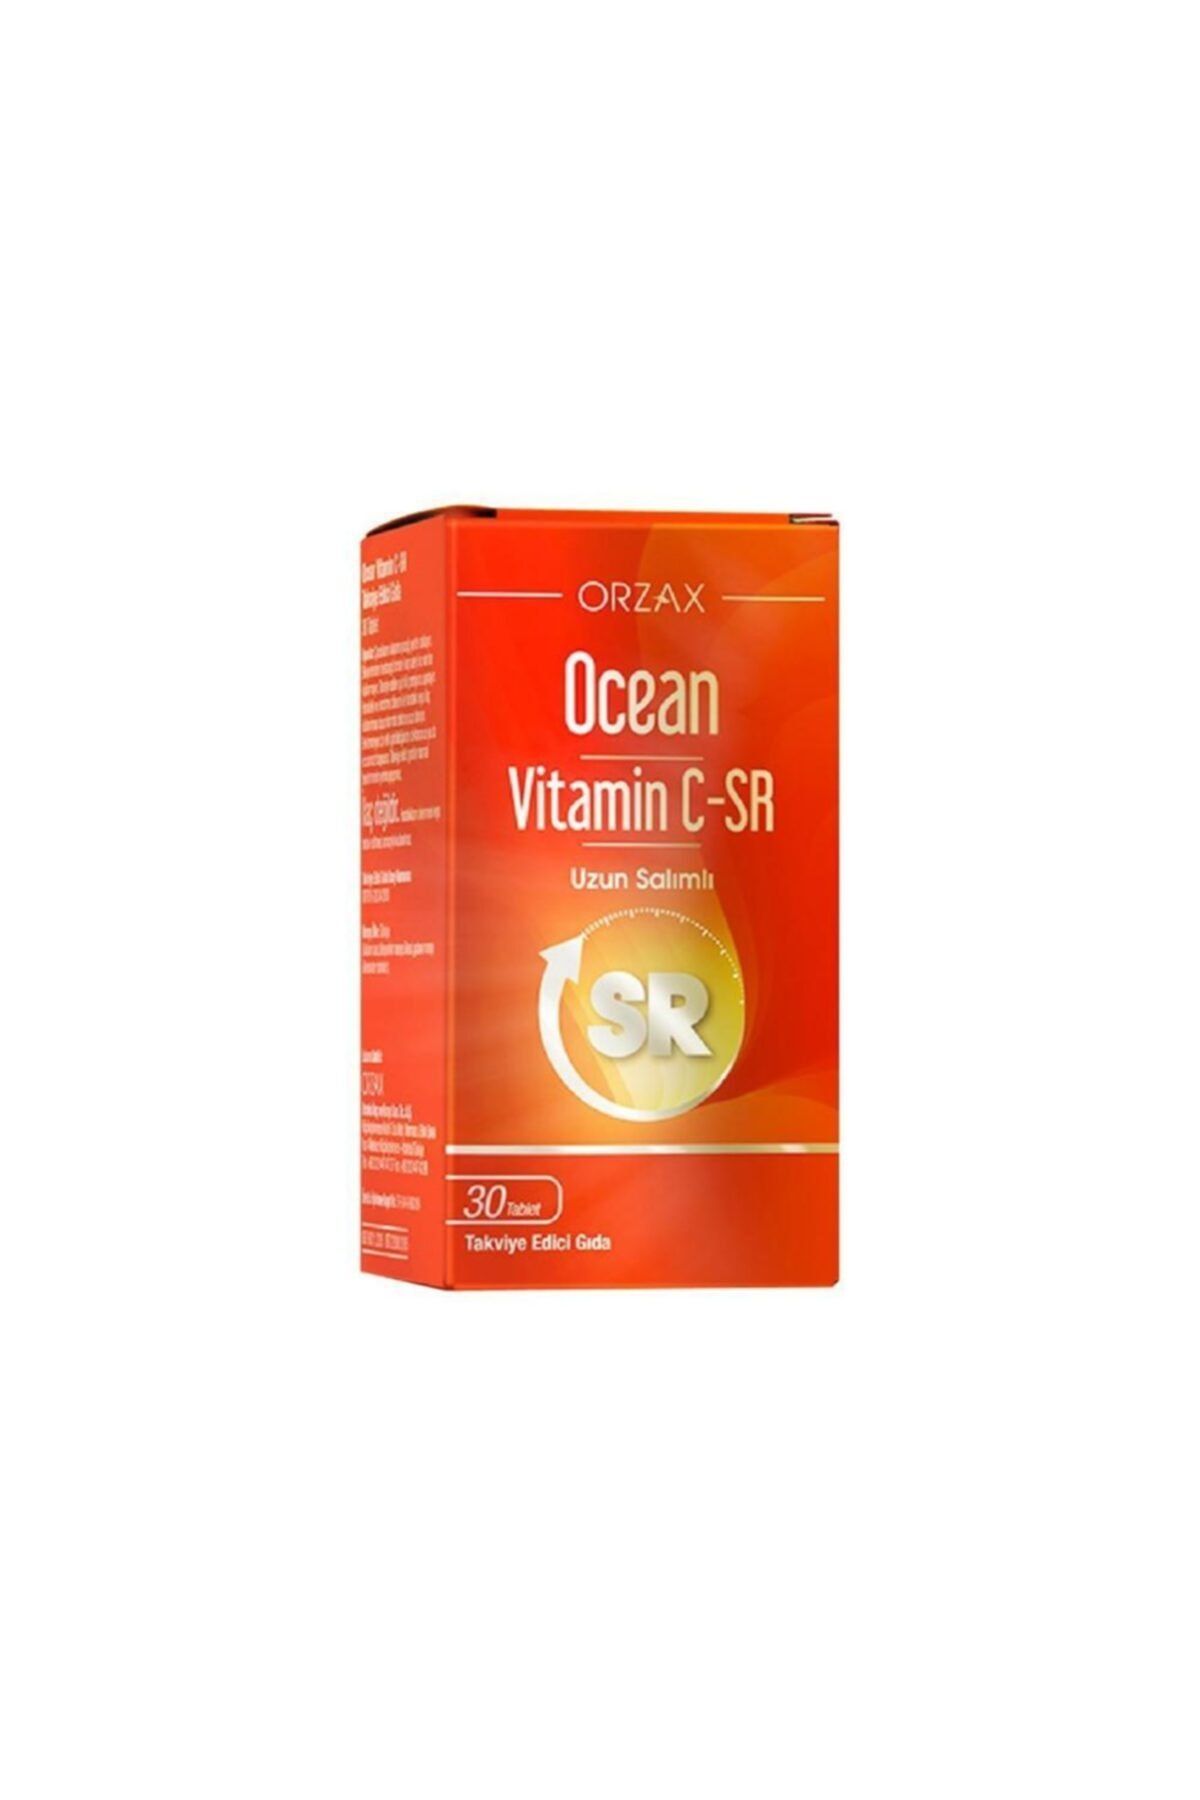 Ocean Vitamin C Sr 30 Tablet